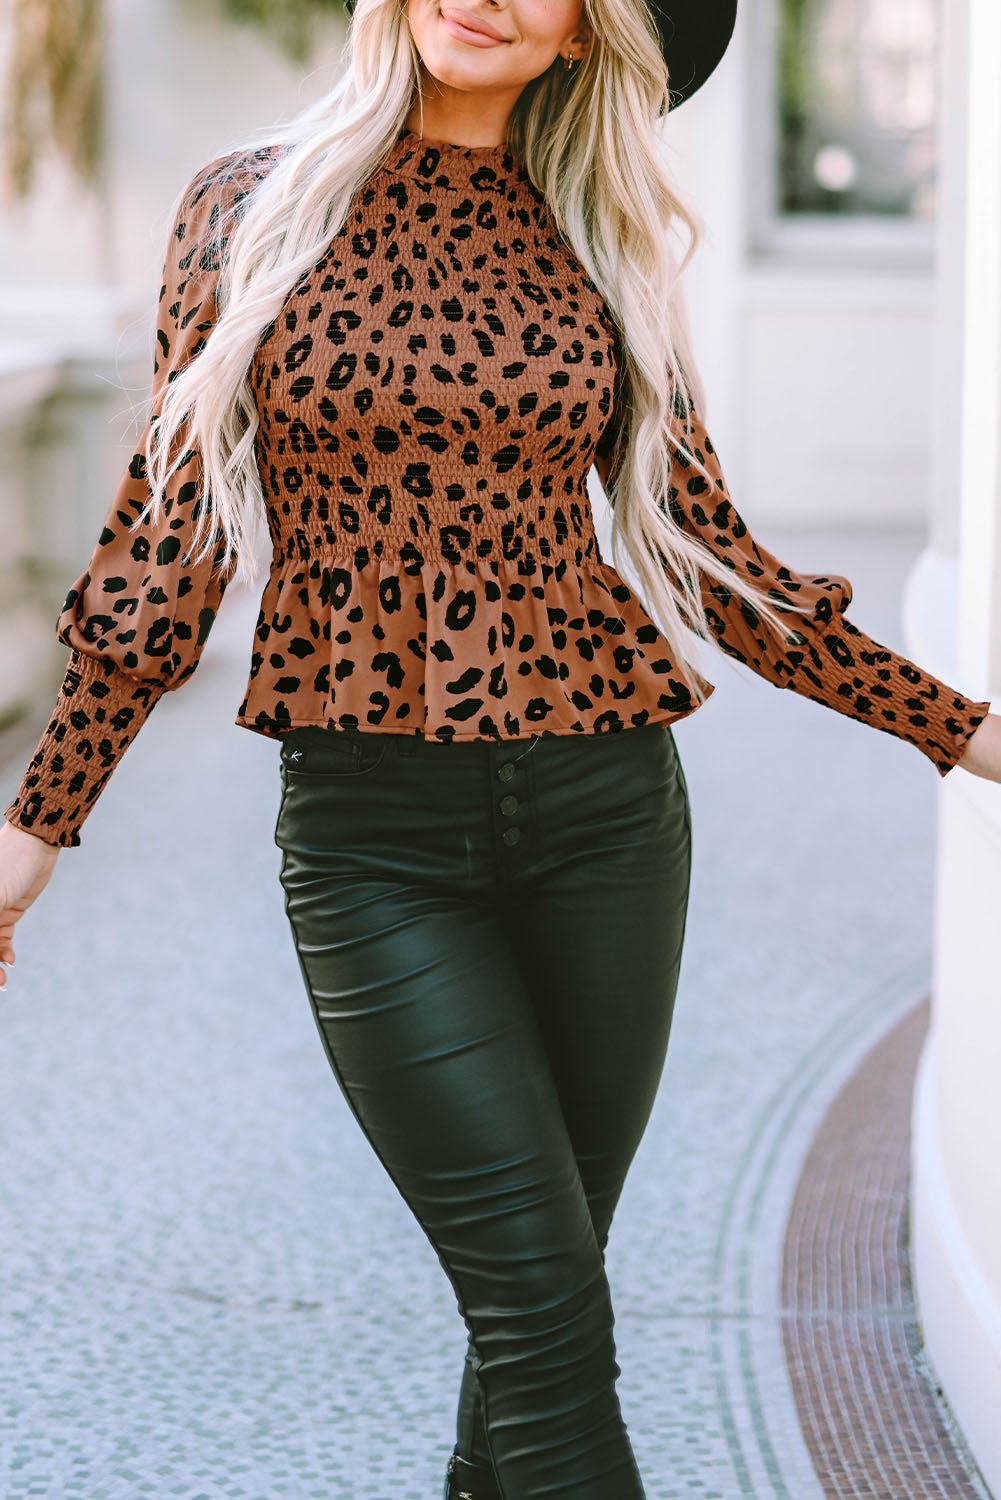 Rjava majica z napihnjenimi rokavi v obliki leoparda in peplum